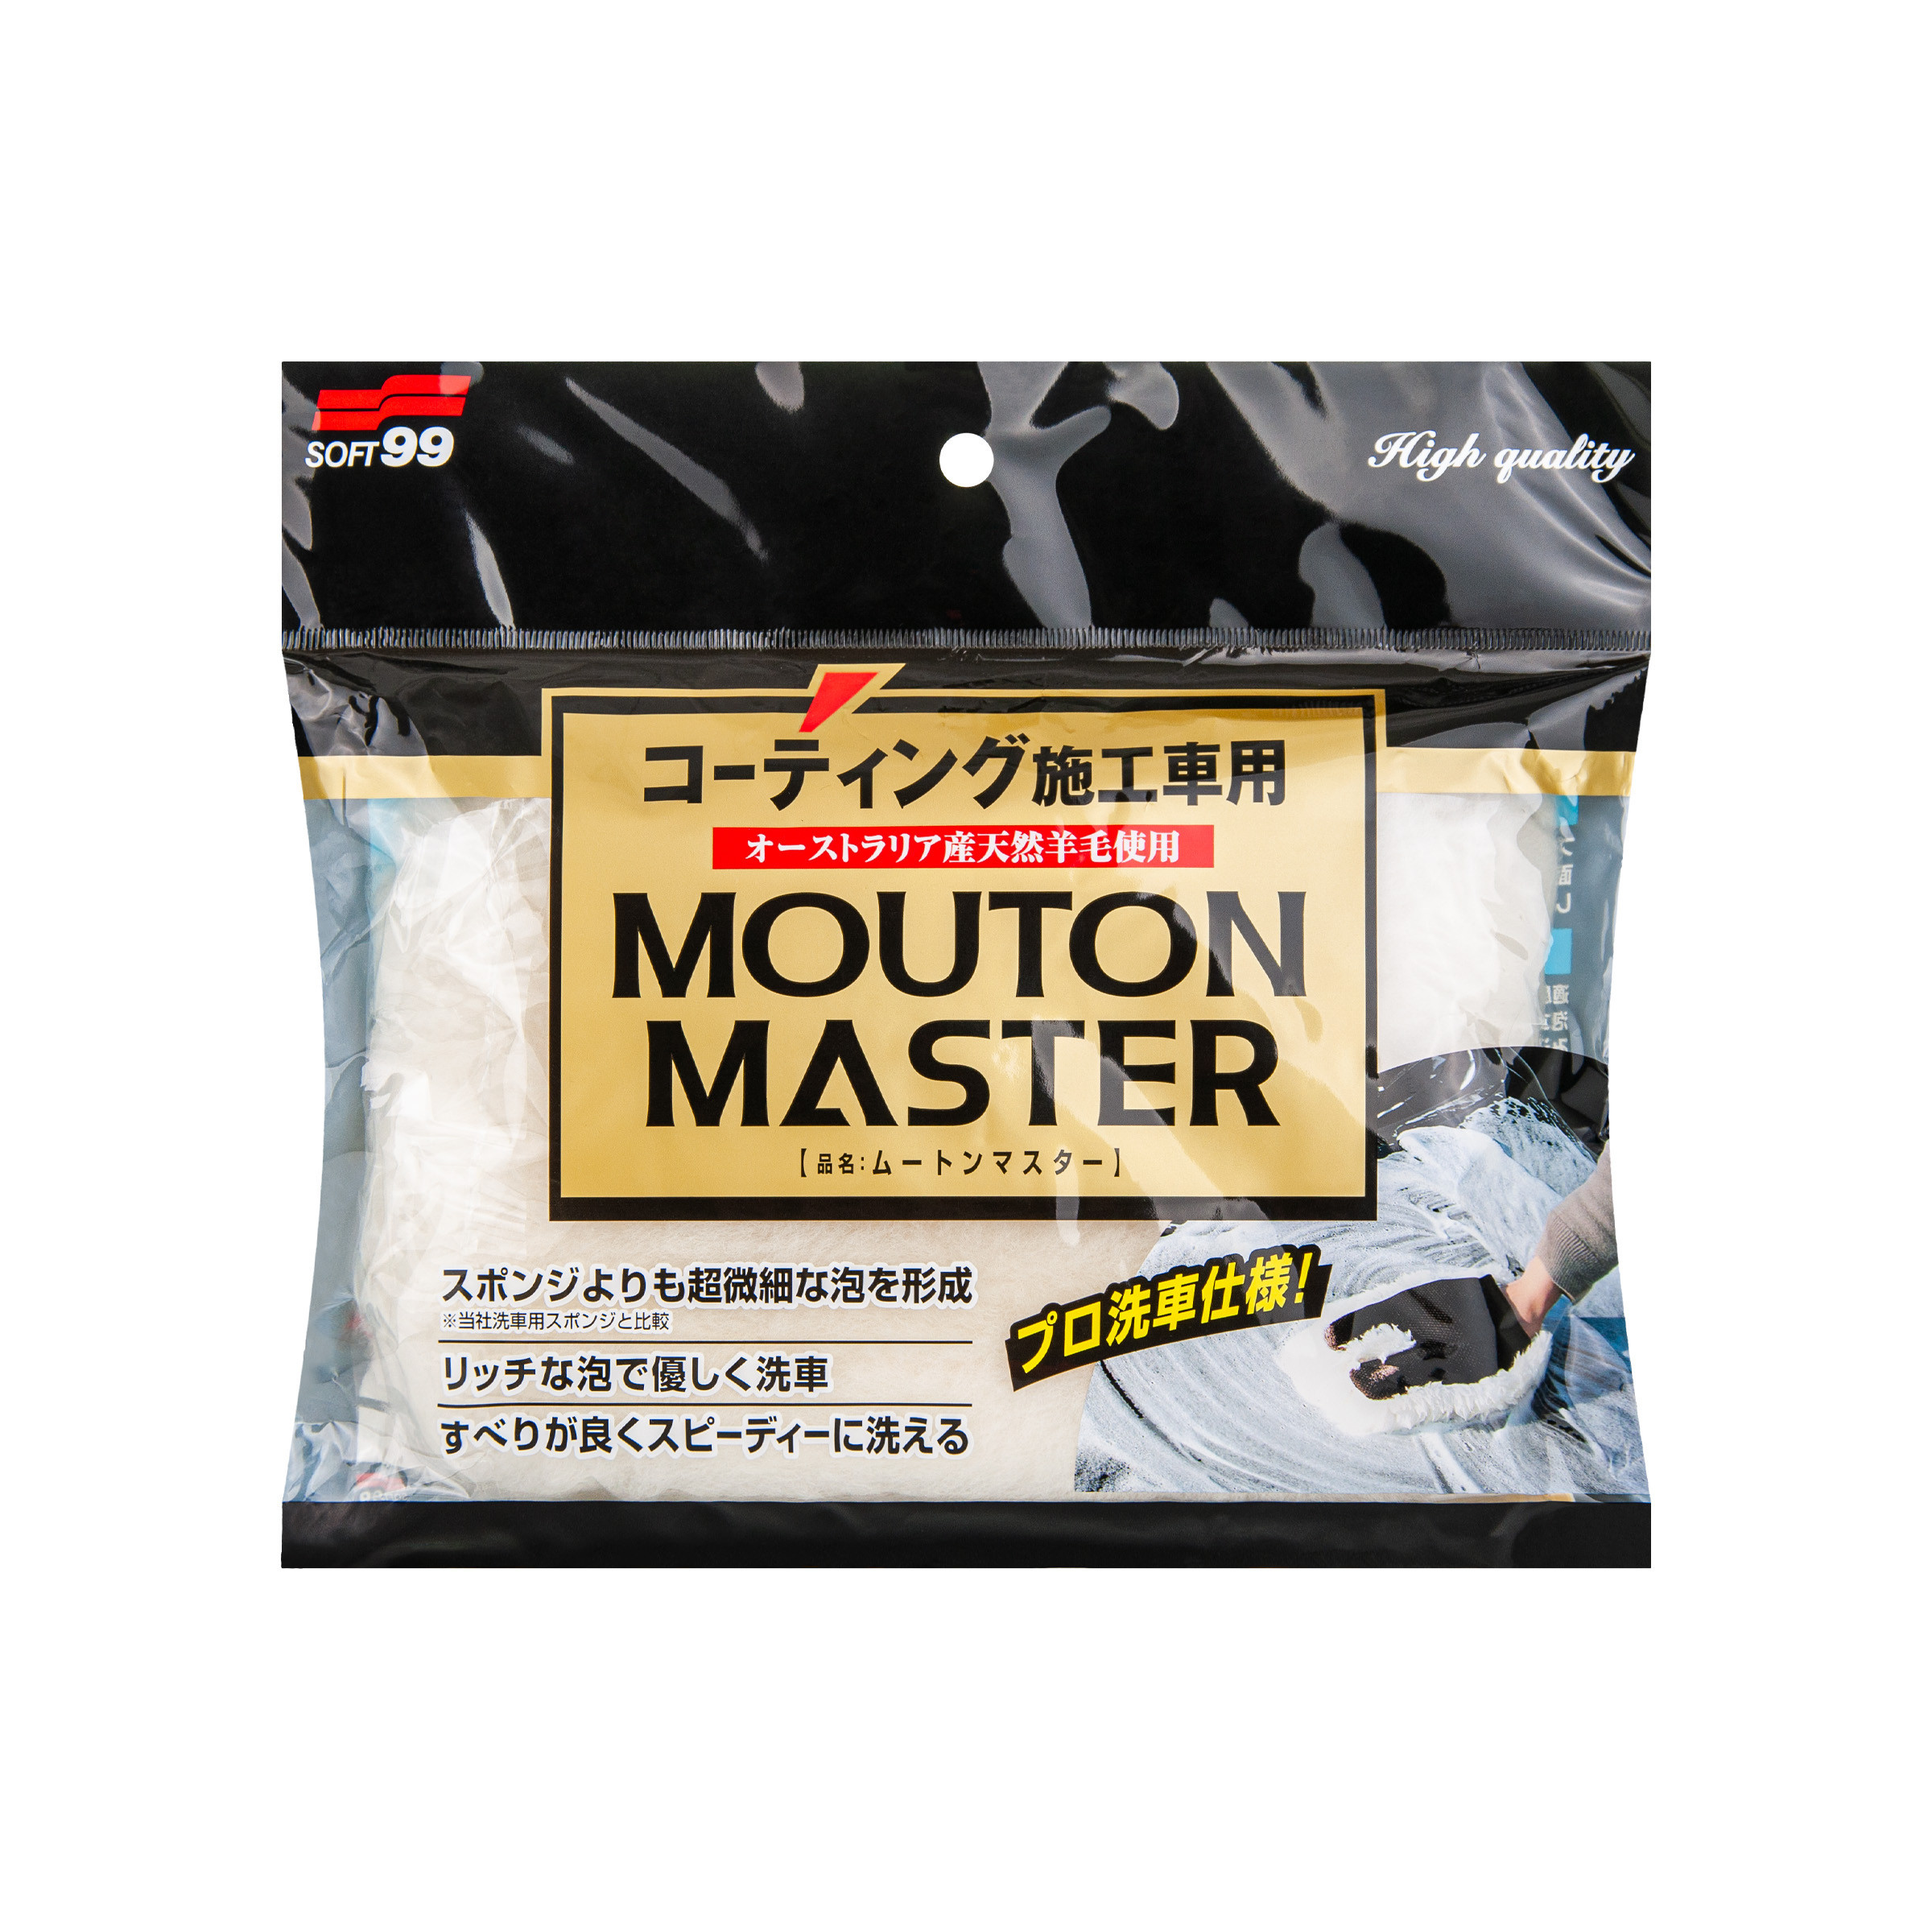 Mouton Master, specjalistyczna i delikatna rękawica